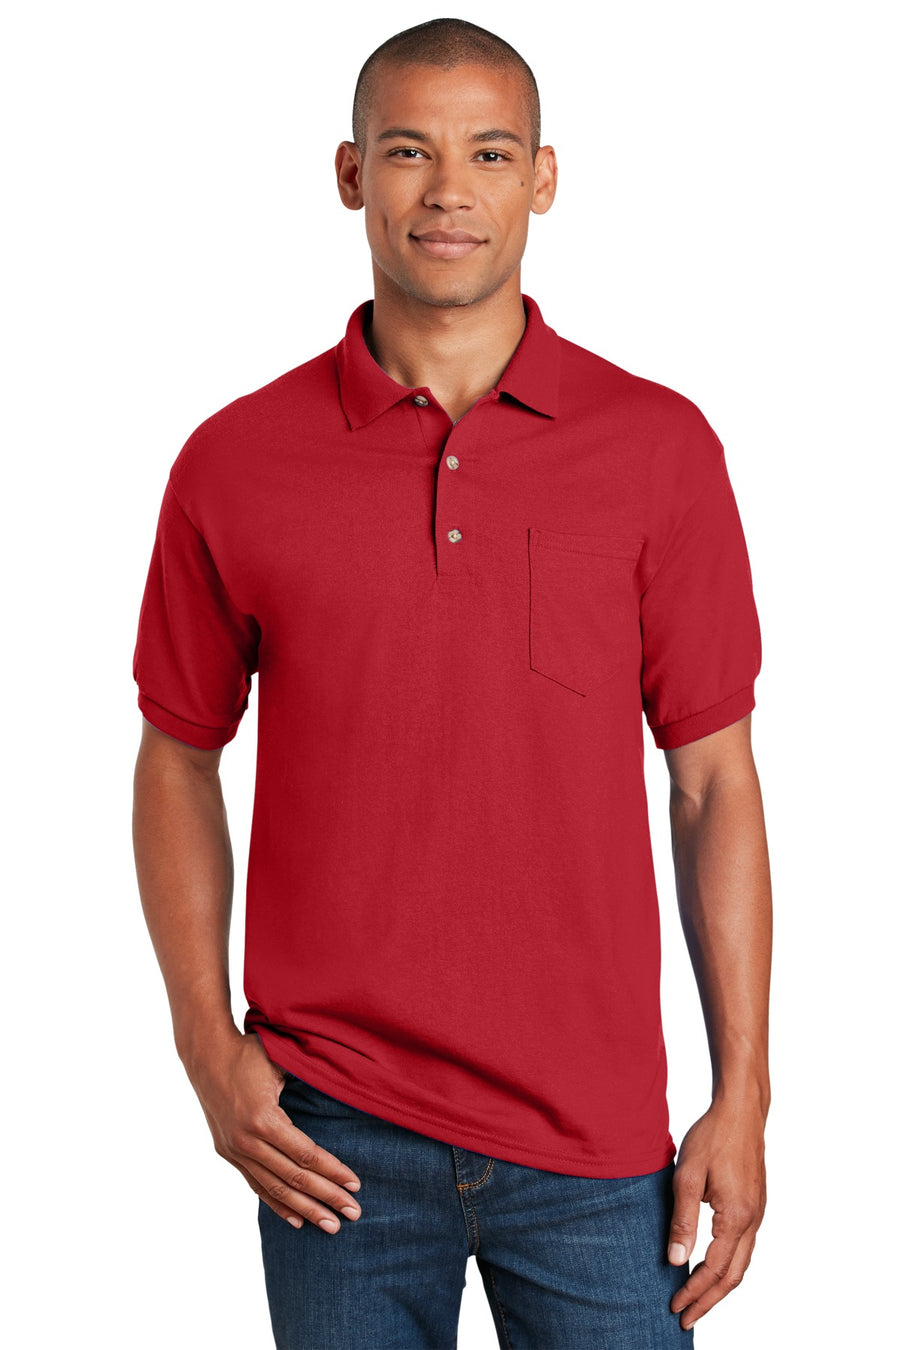 Gildan DryBlend 6-Ounce Jersey Knit Sport Shirt with Pocket.